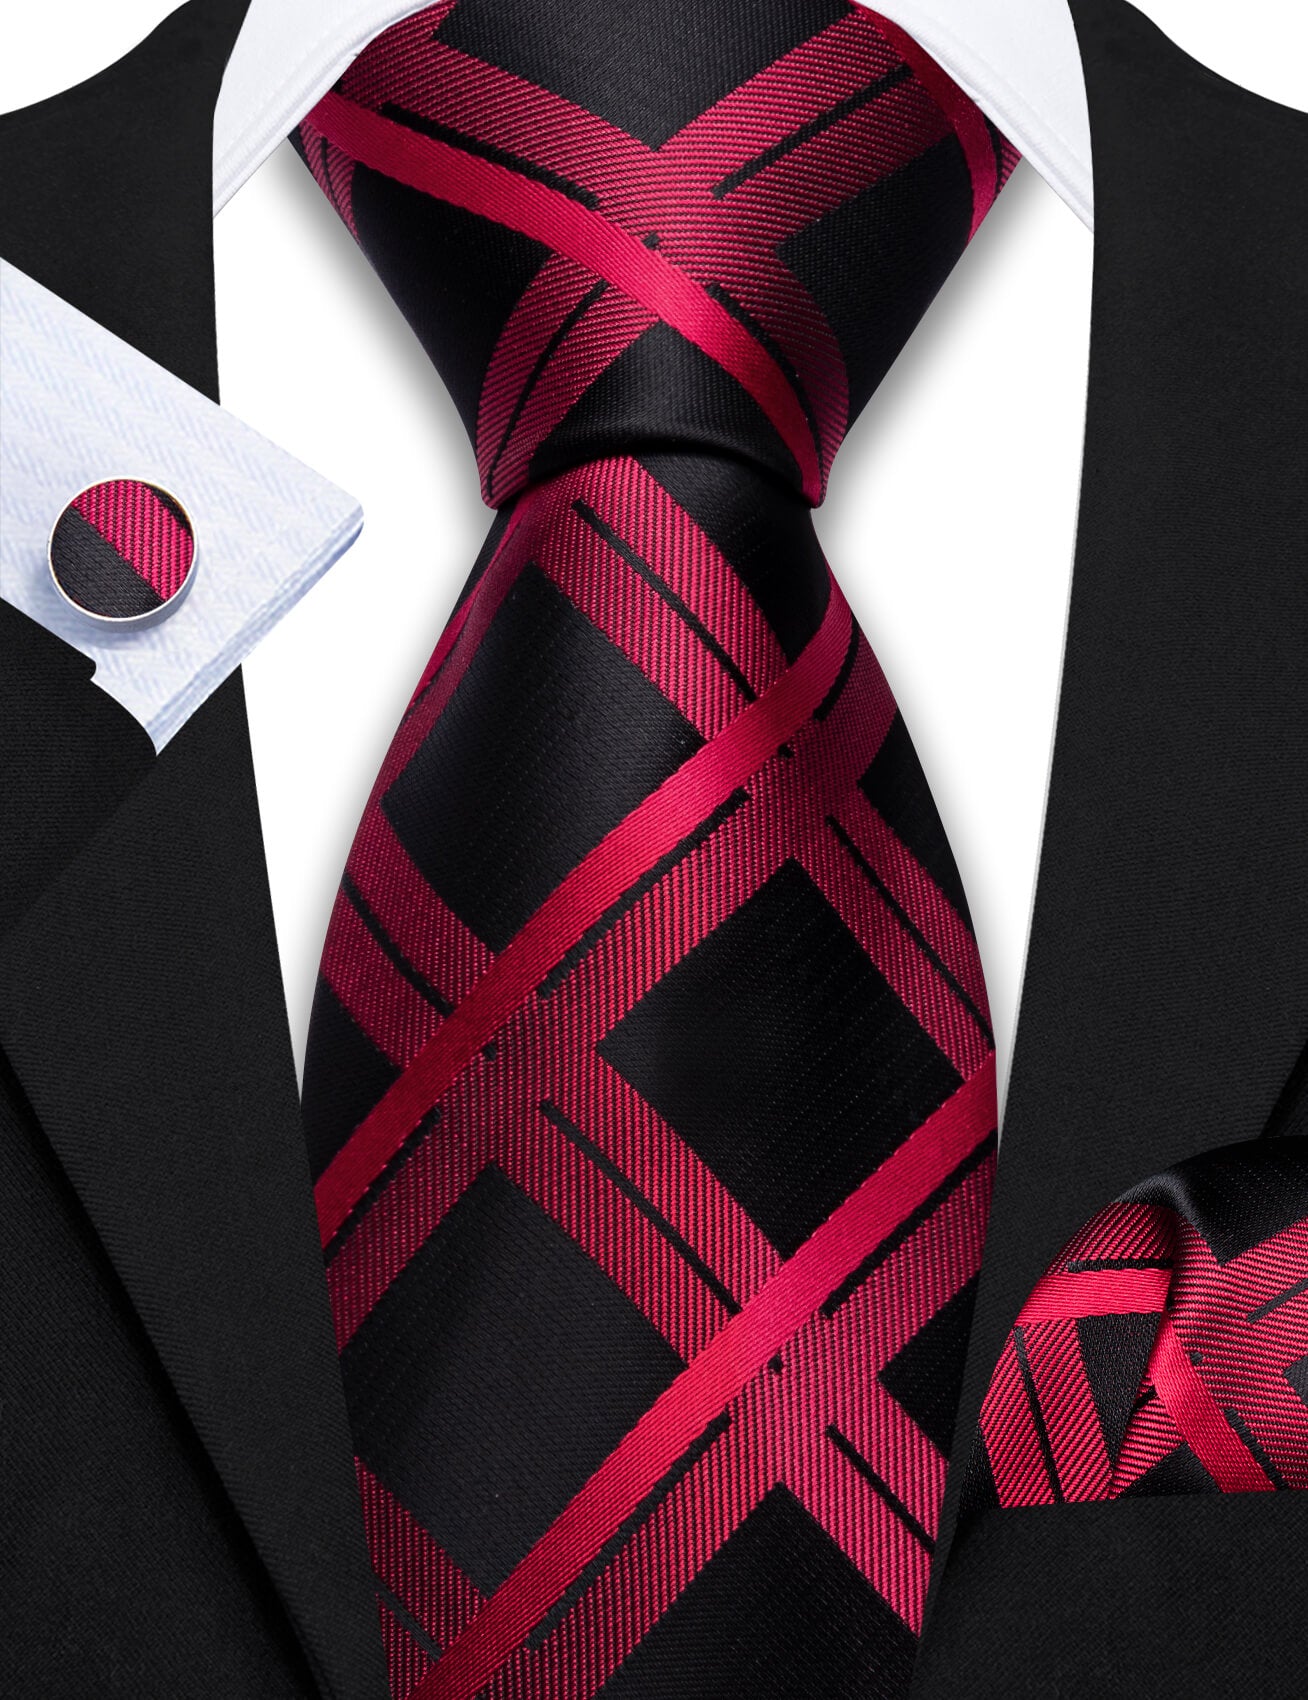 Barry.wang Plaid Tie Dark Red Black Silk Men's Tie Hanky Cufflinks Set Hot Selling